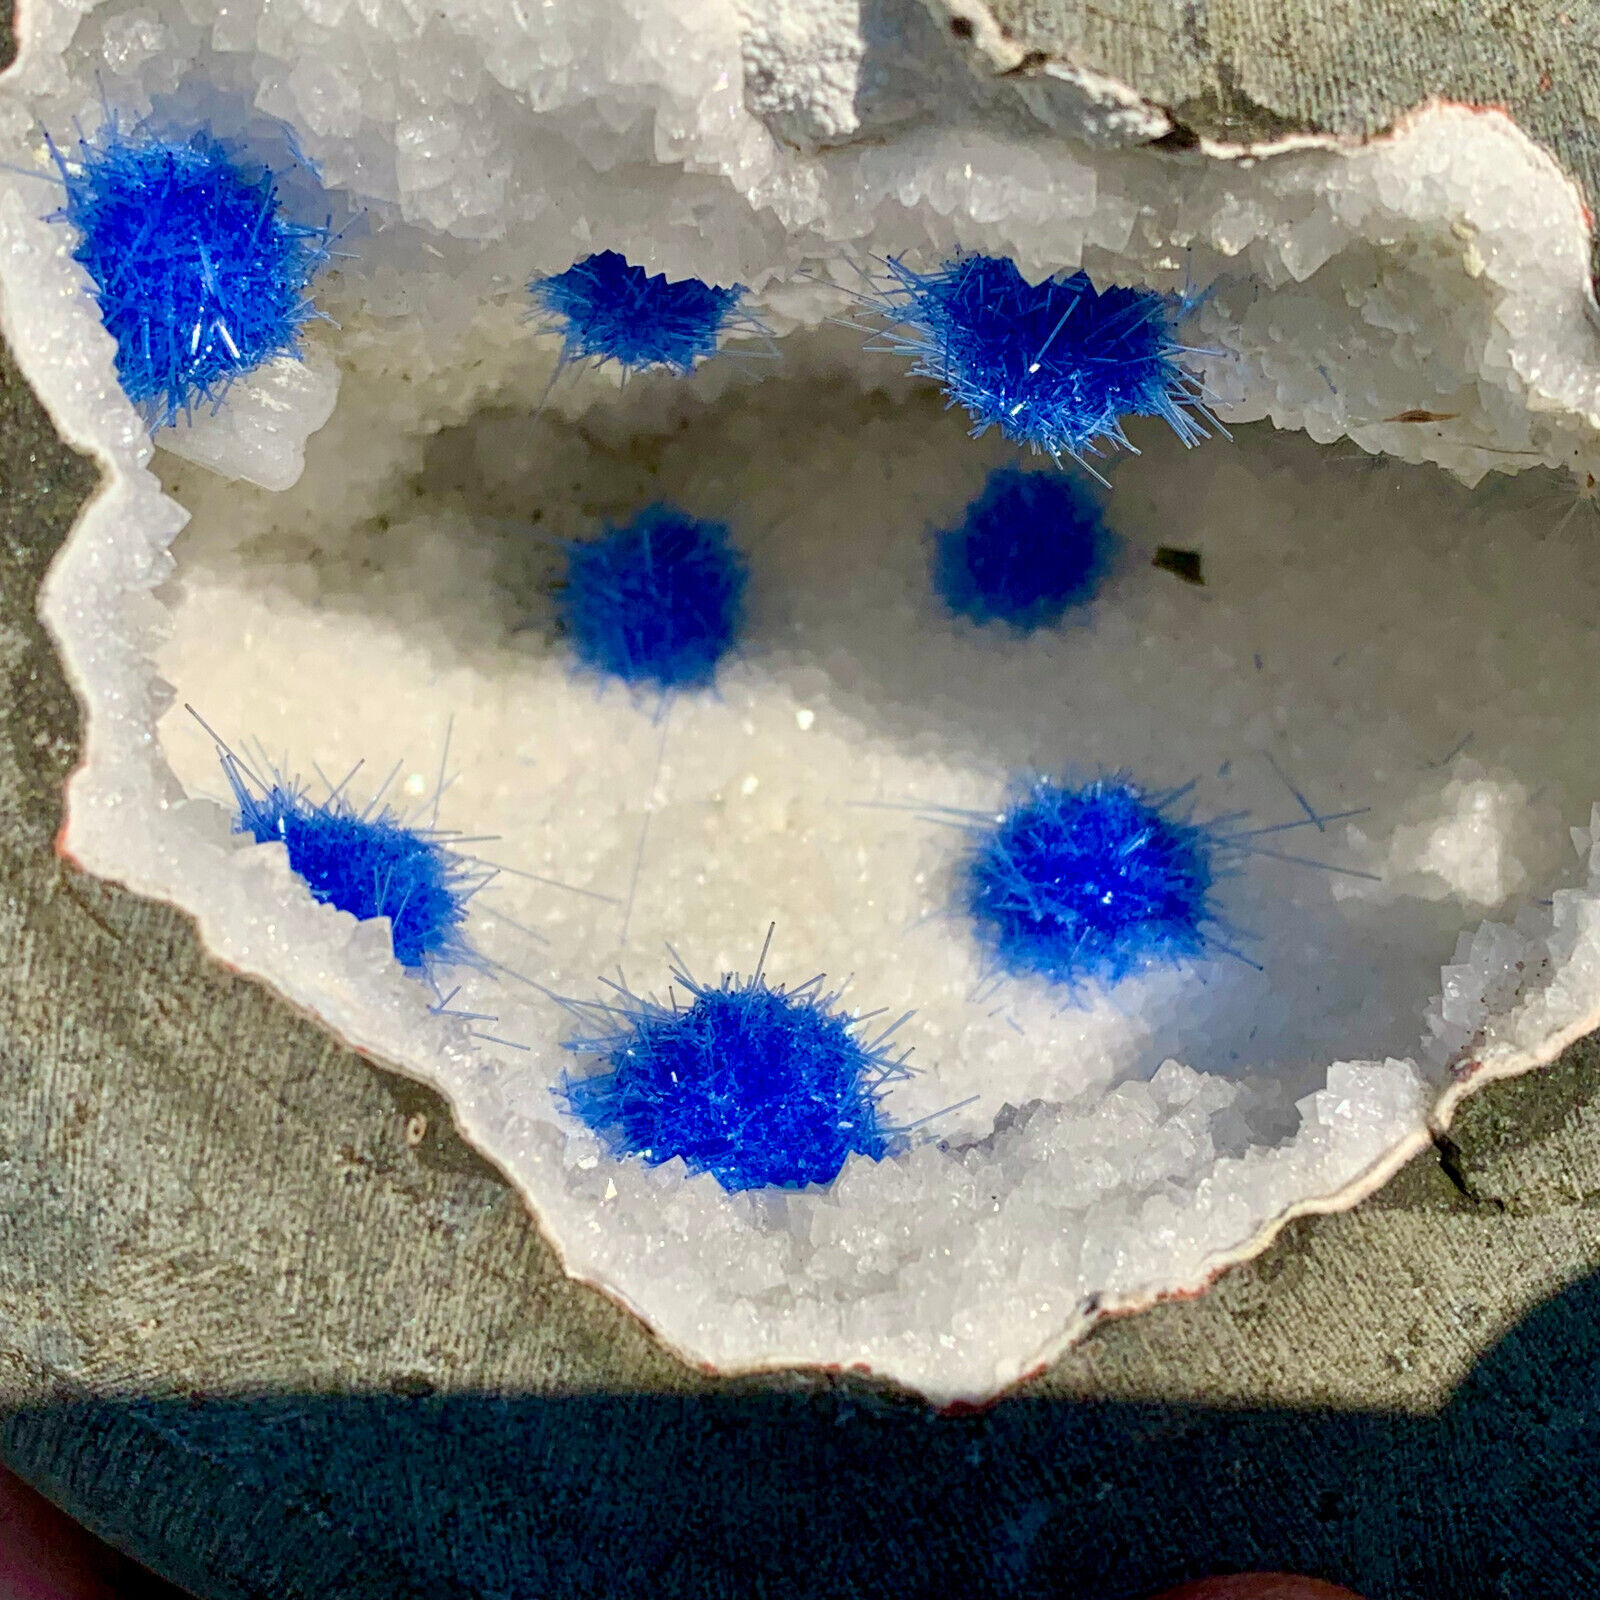 6.03LB Rare Moroccan blue magnesite and quartz crystal coexisting specimen